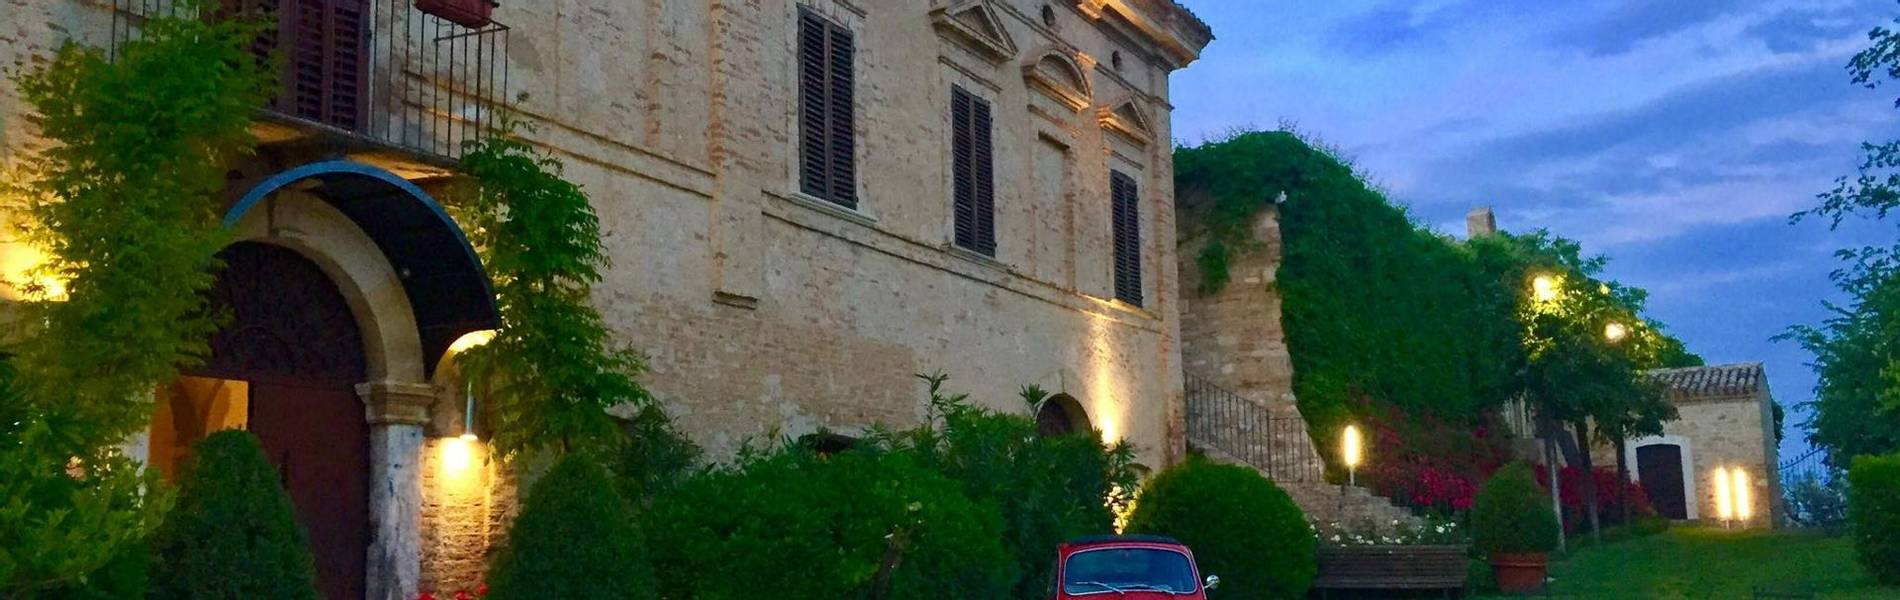 Castello Di Semivicoli, Abruzzo, Italy (3).jpg